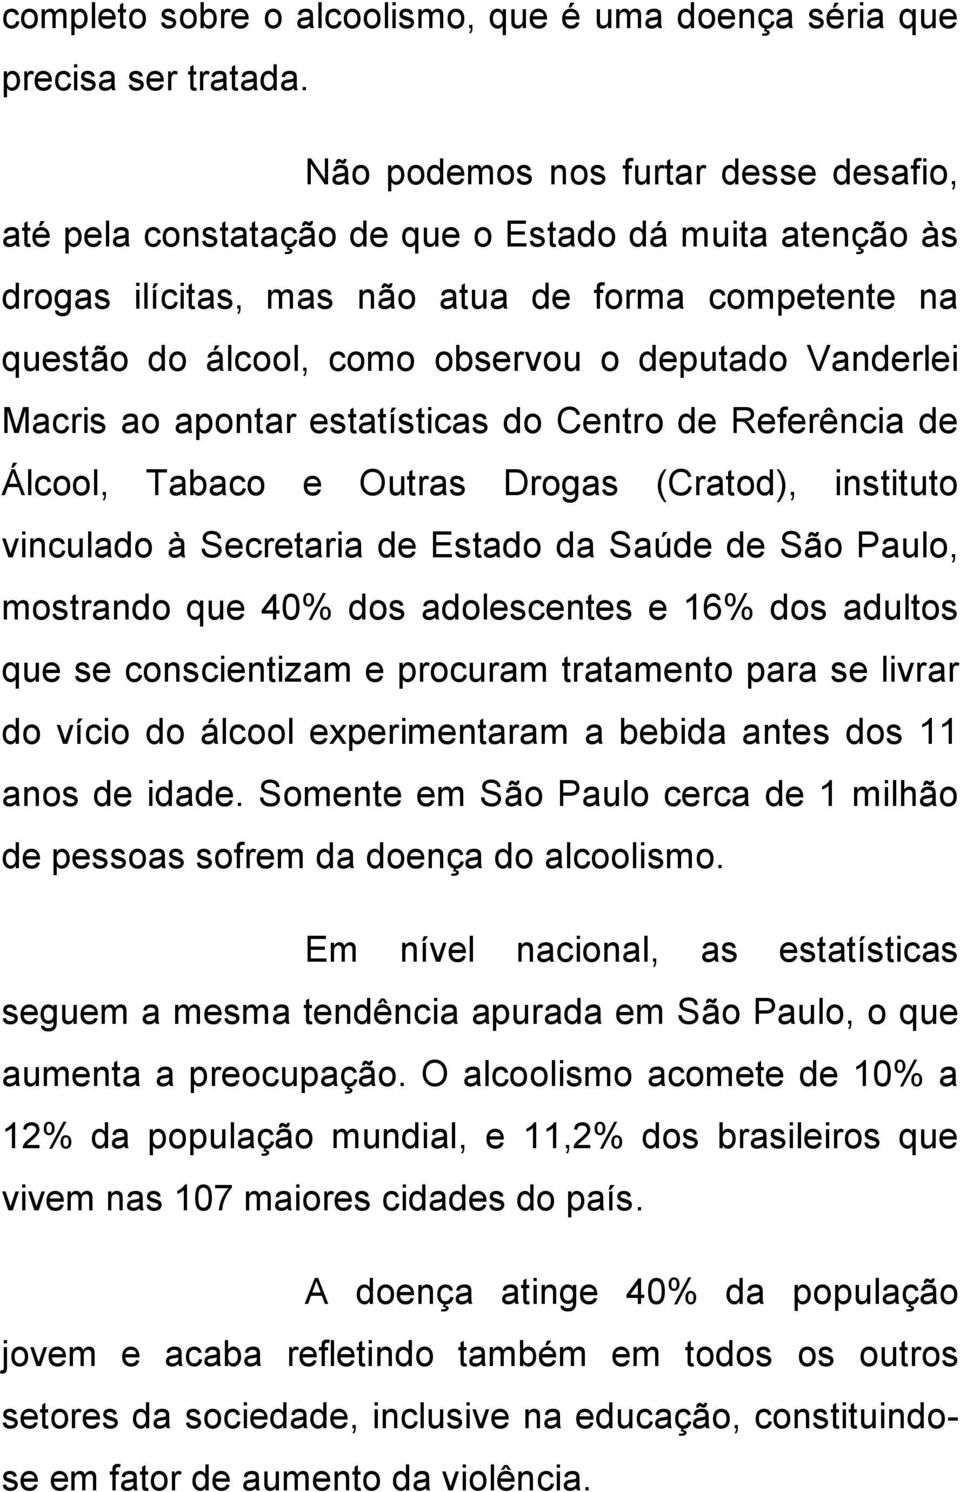 Vanderlei Macris ao apontar estatísticas do Centro de Referência de Álcool, Tabaco e Outras Drogas (Cratod), instituto vinculado à Secretaria de Estado da Saúde de São Paulo, mostrando que 40% dos